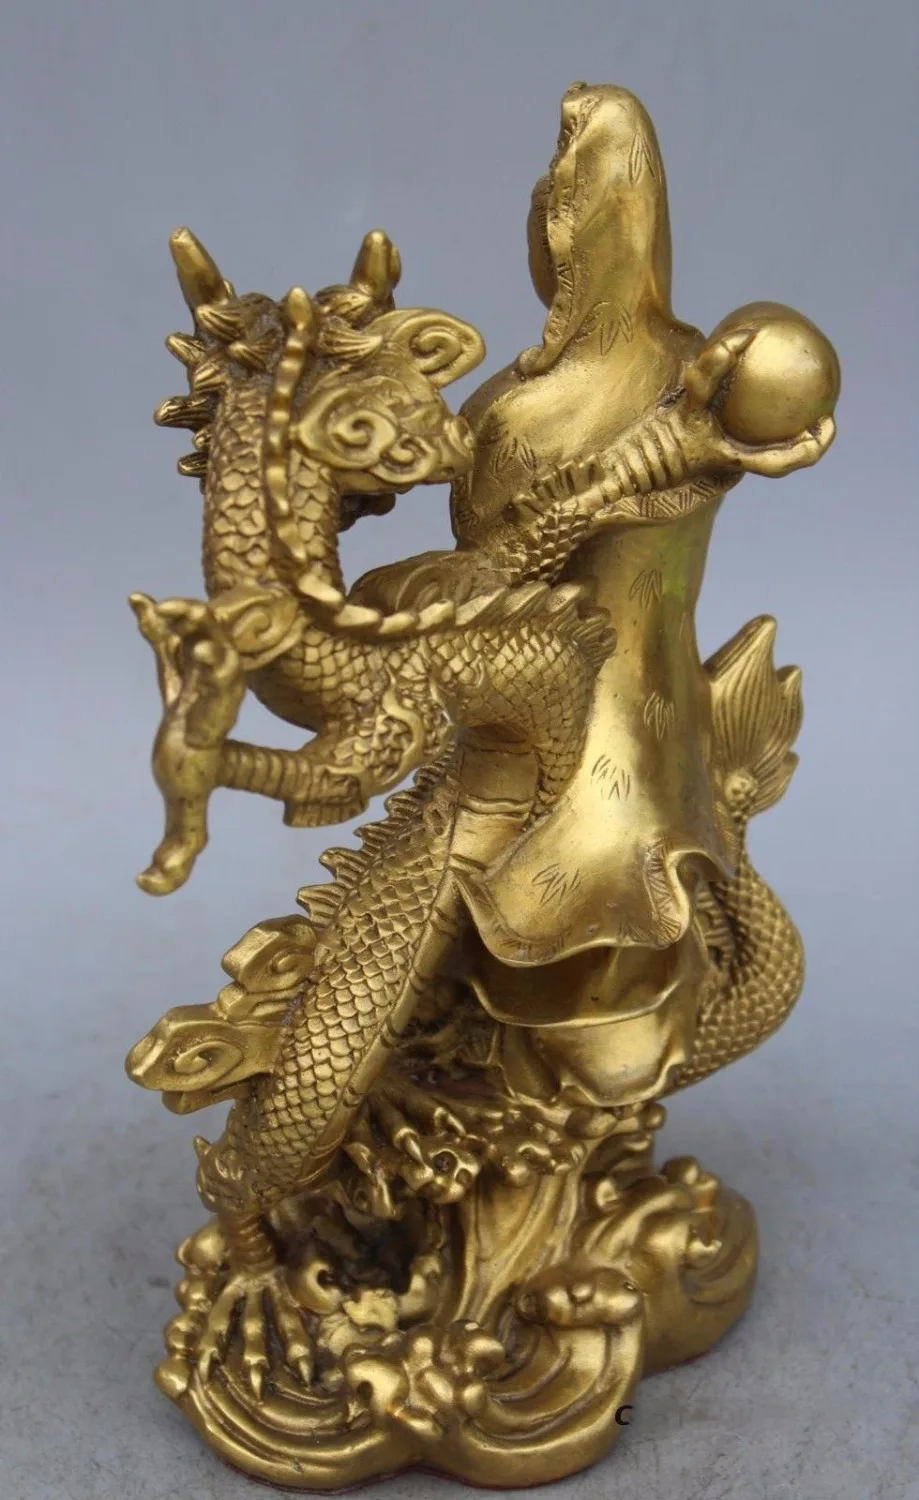 China Buddhism Temple Pure Brass Dragon kwan-yin GuanYin Goddess buddha statue 